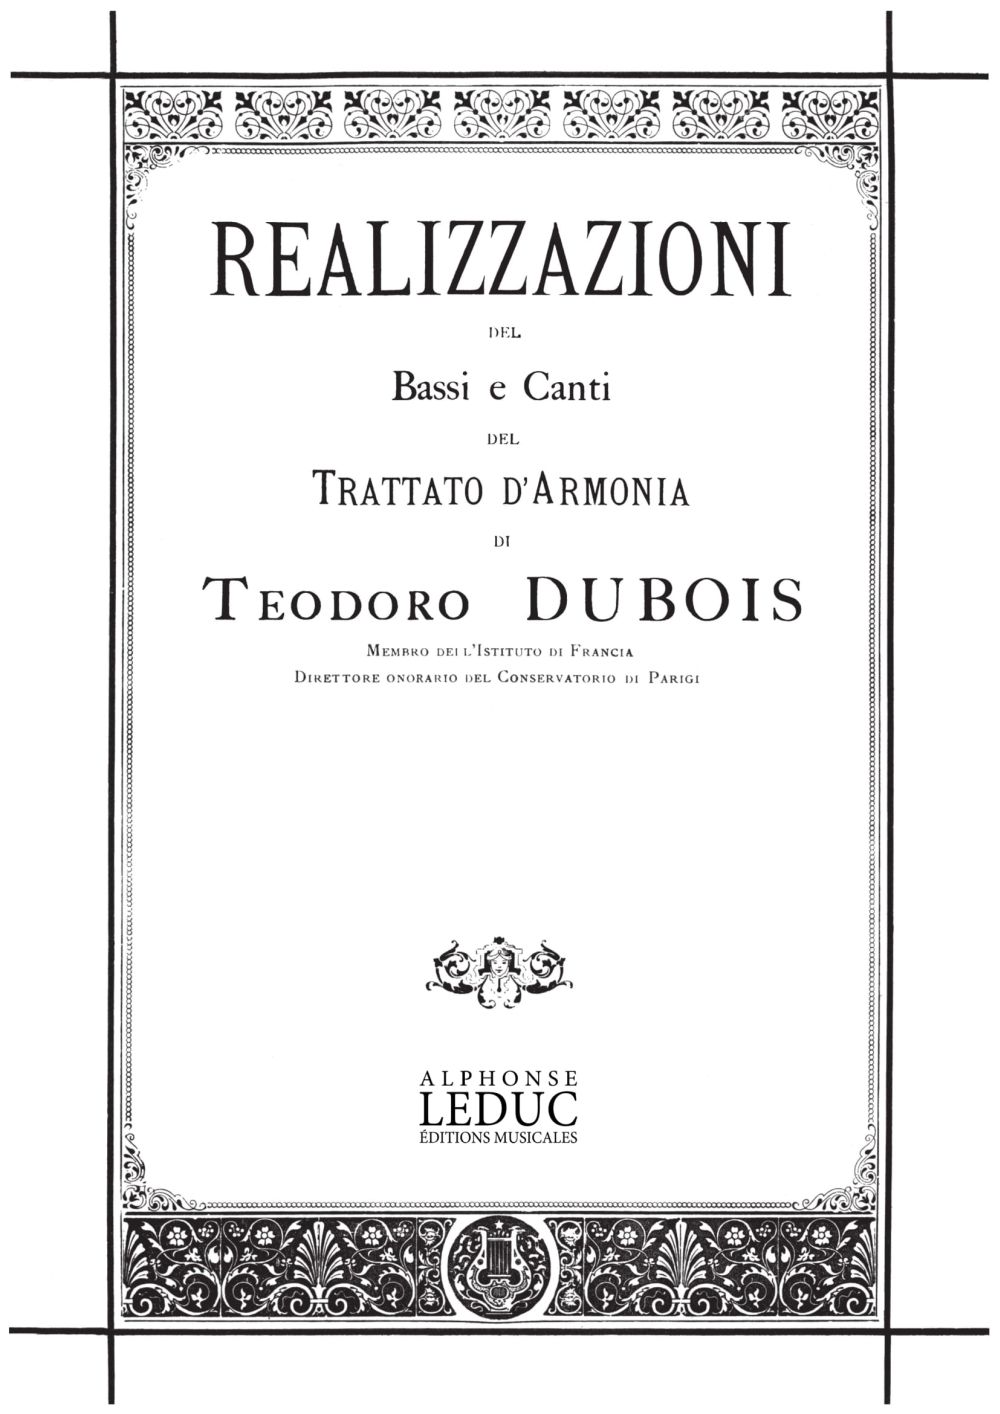 Thodore Dubois: Realizzazione Dei Bassi E Canti Del Trattato D'Arm